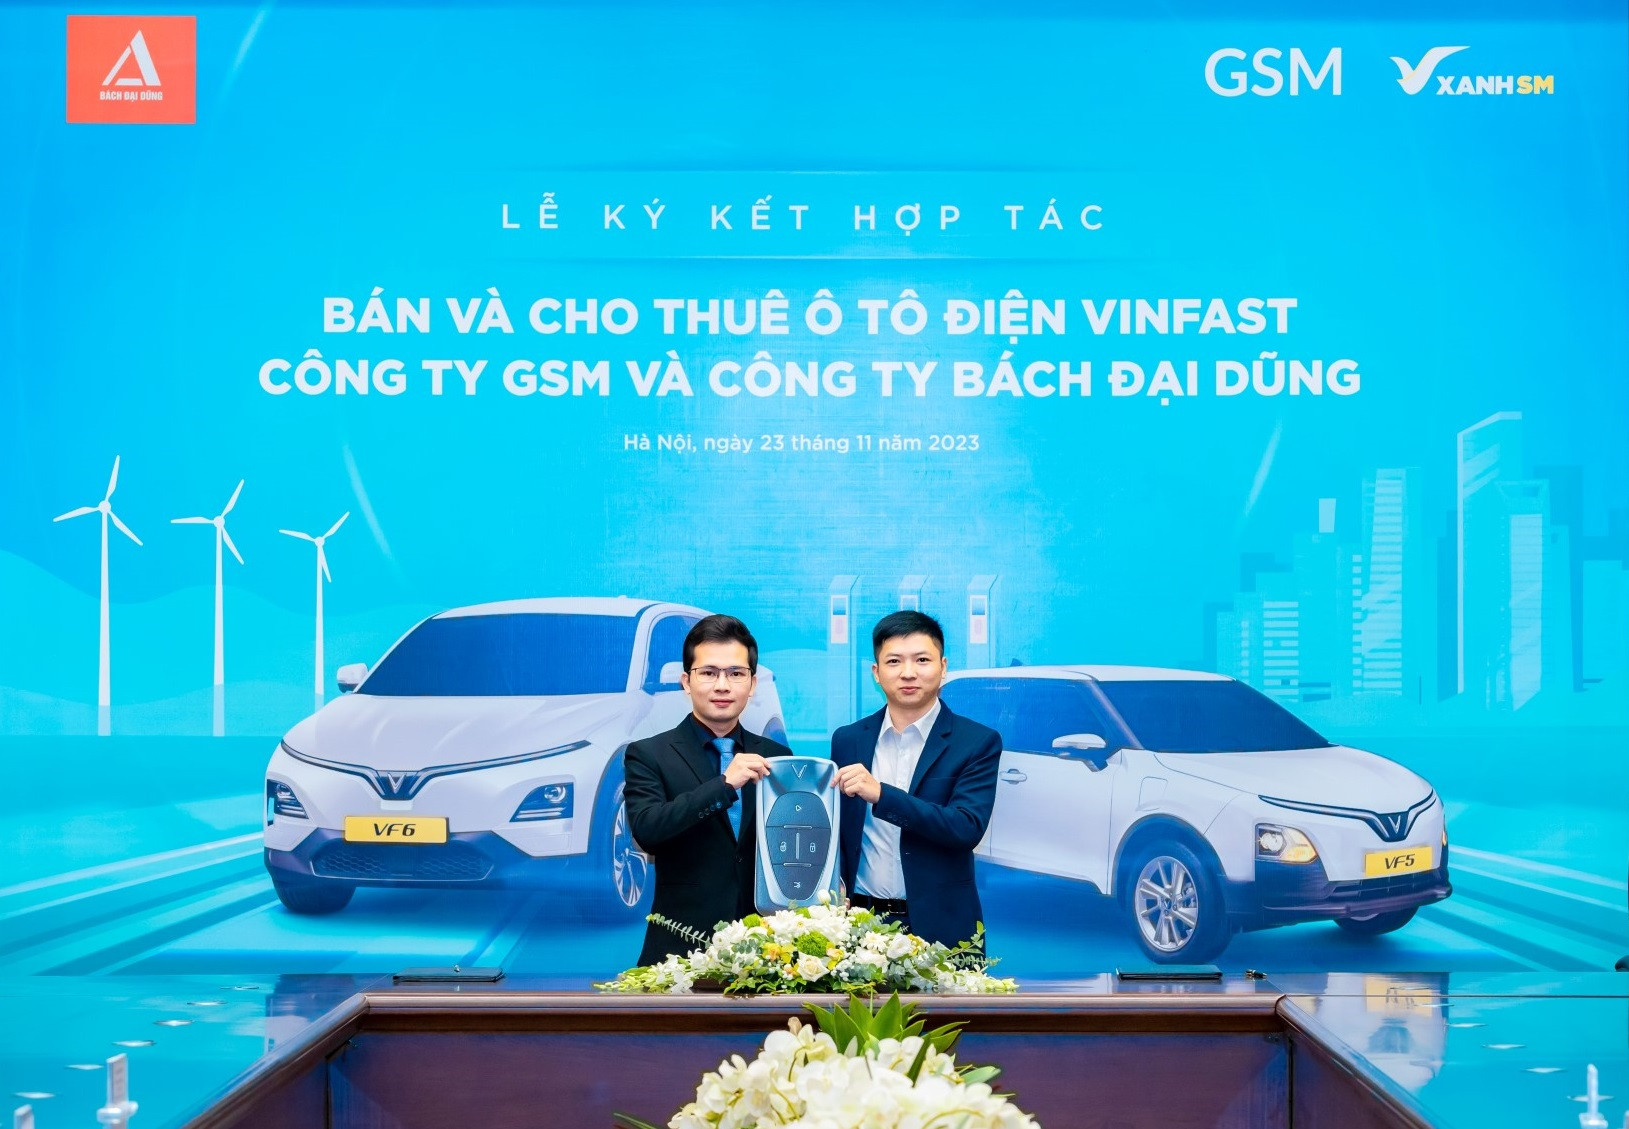 Bách Đại Dũng mua, thuê 300 xe VinFast làm taxi điện tại Hà Tĩnh